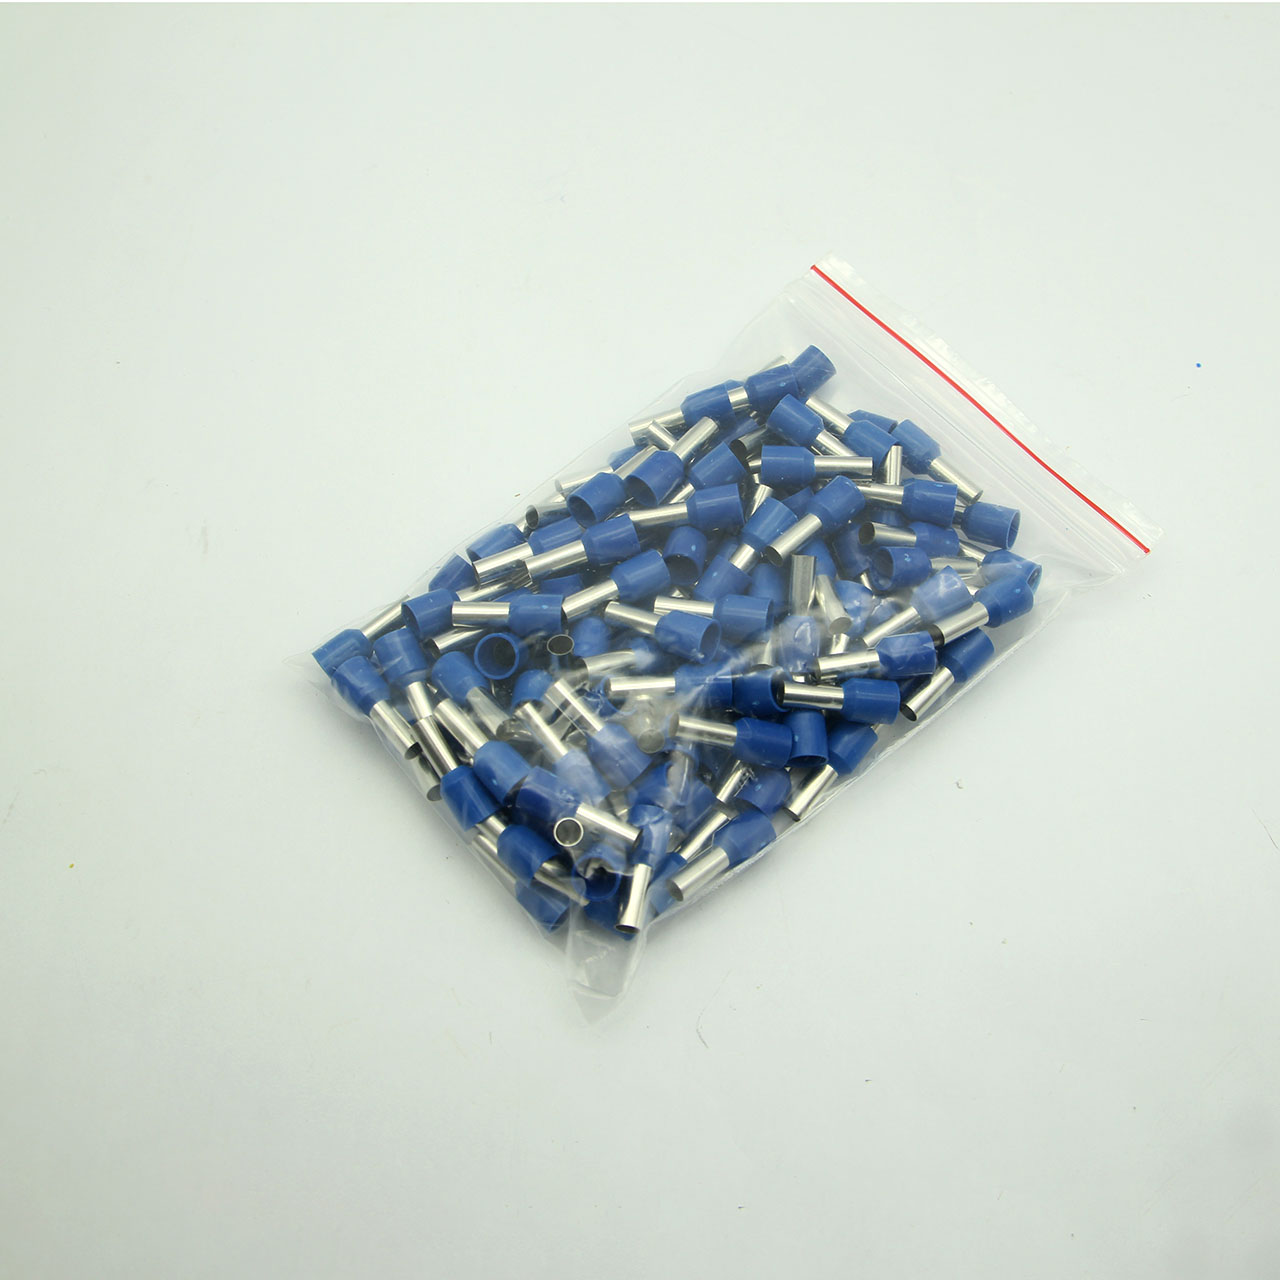 Túi 100 đầu cos pin rỗng E1012 bọc nhựa xanh